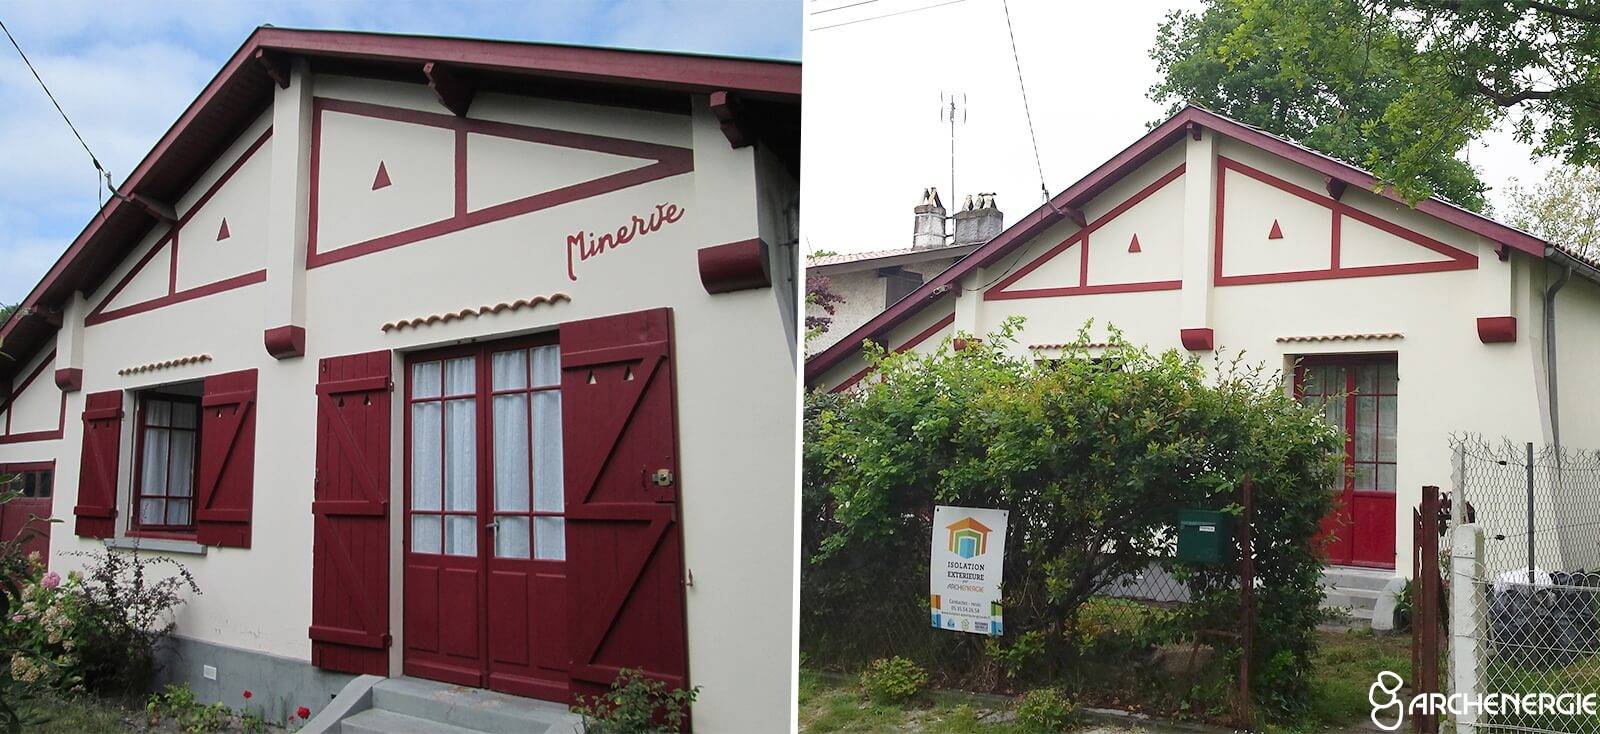 Maison typique des années 50 à Andernos (33). Avant travaux (photo à gauche). Après travaux d’isolation extérieure en polystyrène (photo à droite).